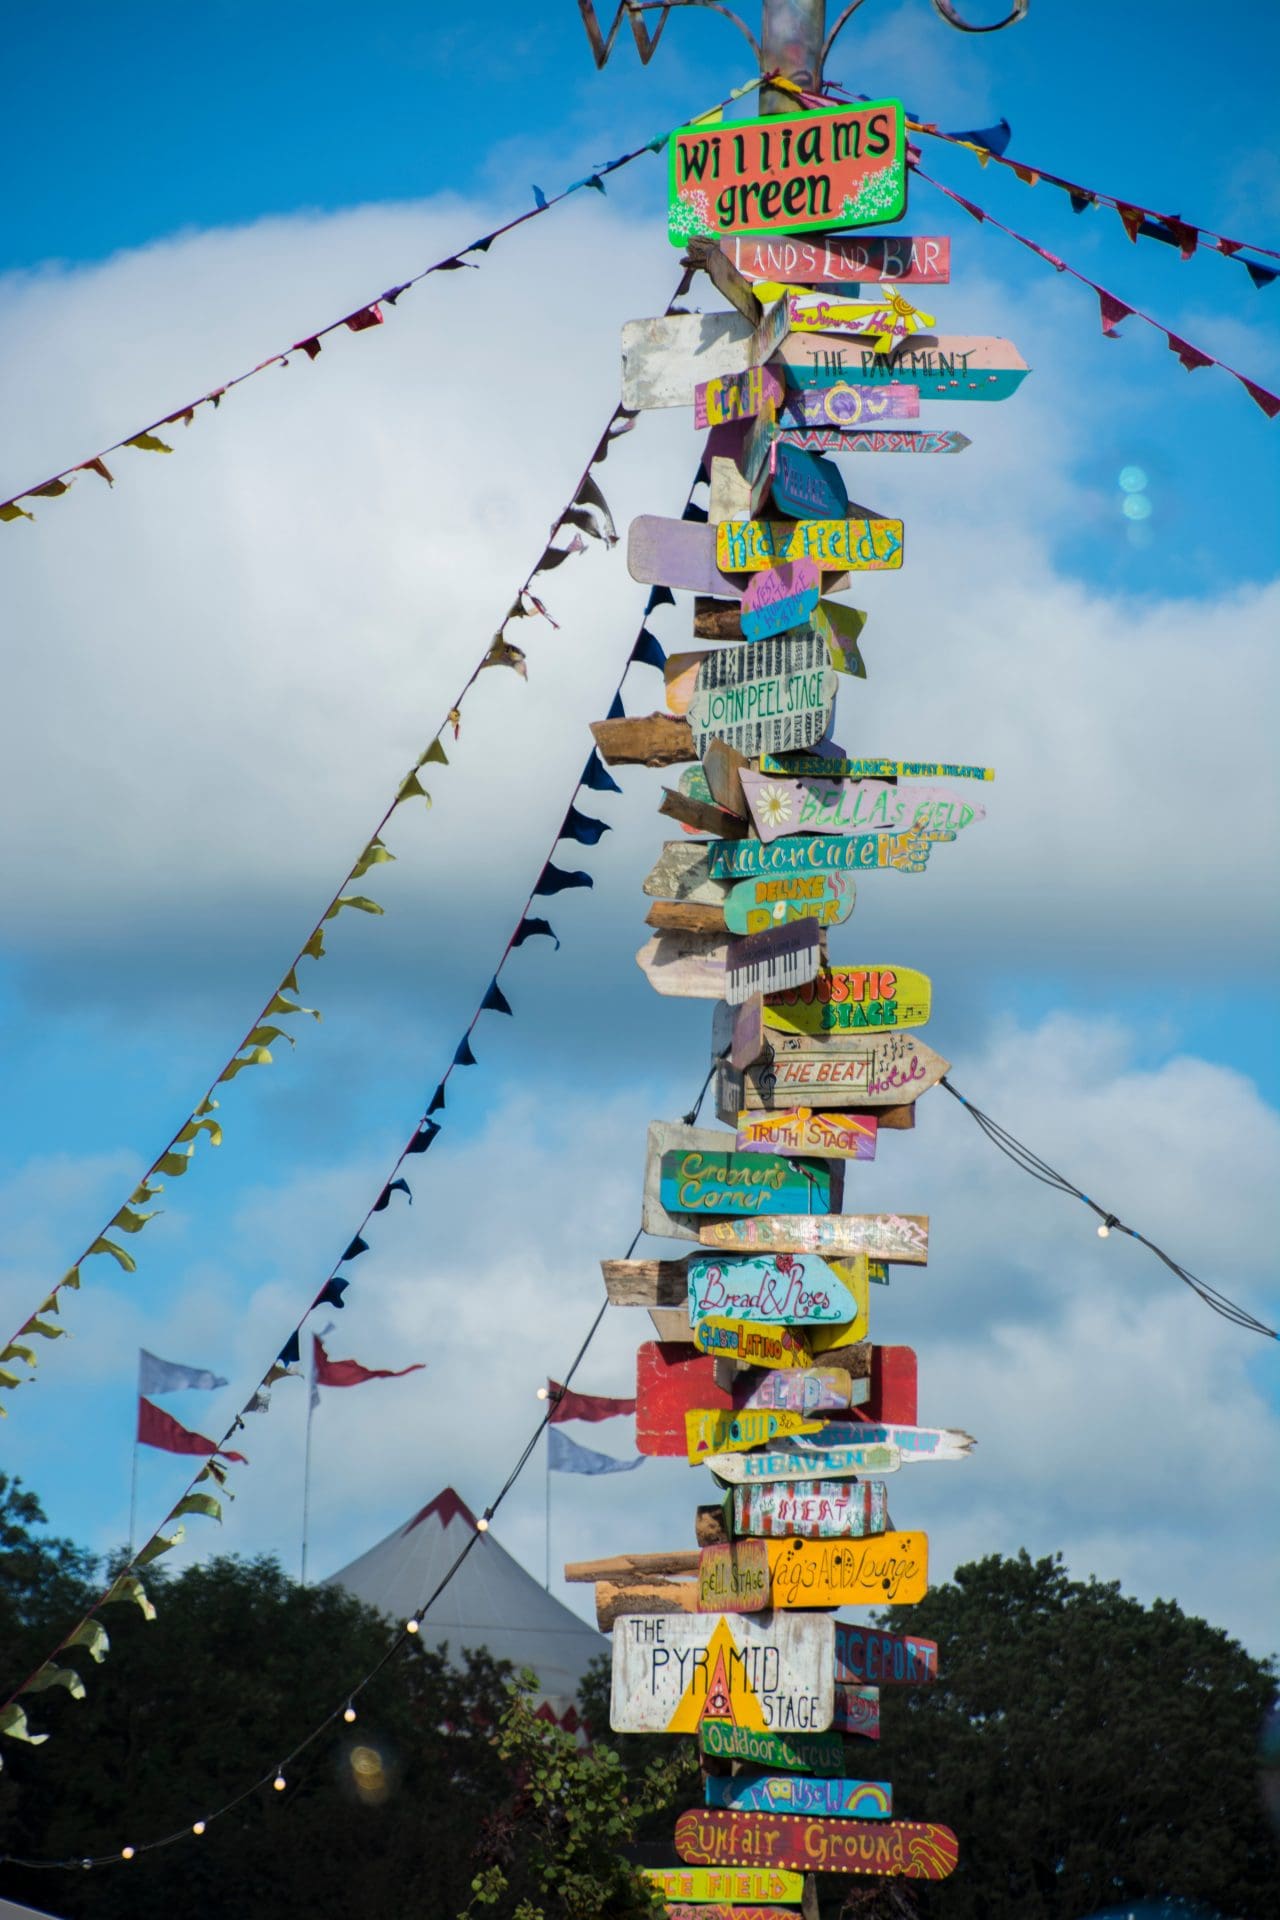 Glastonbury Festival signage